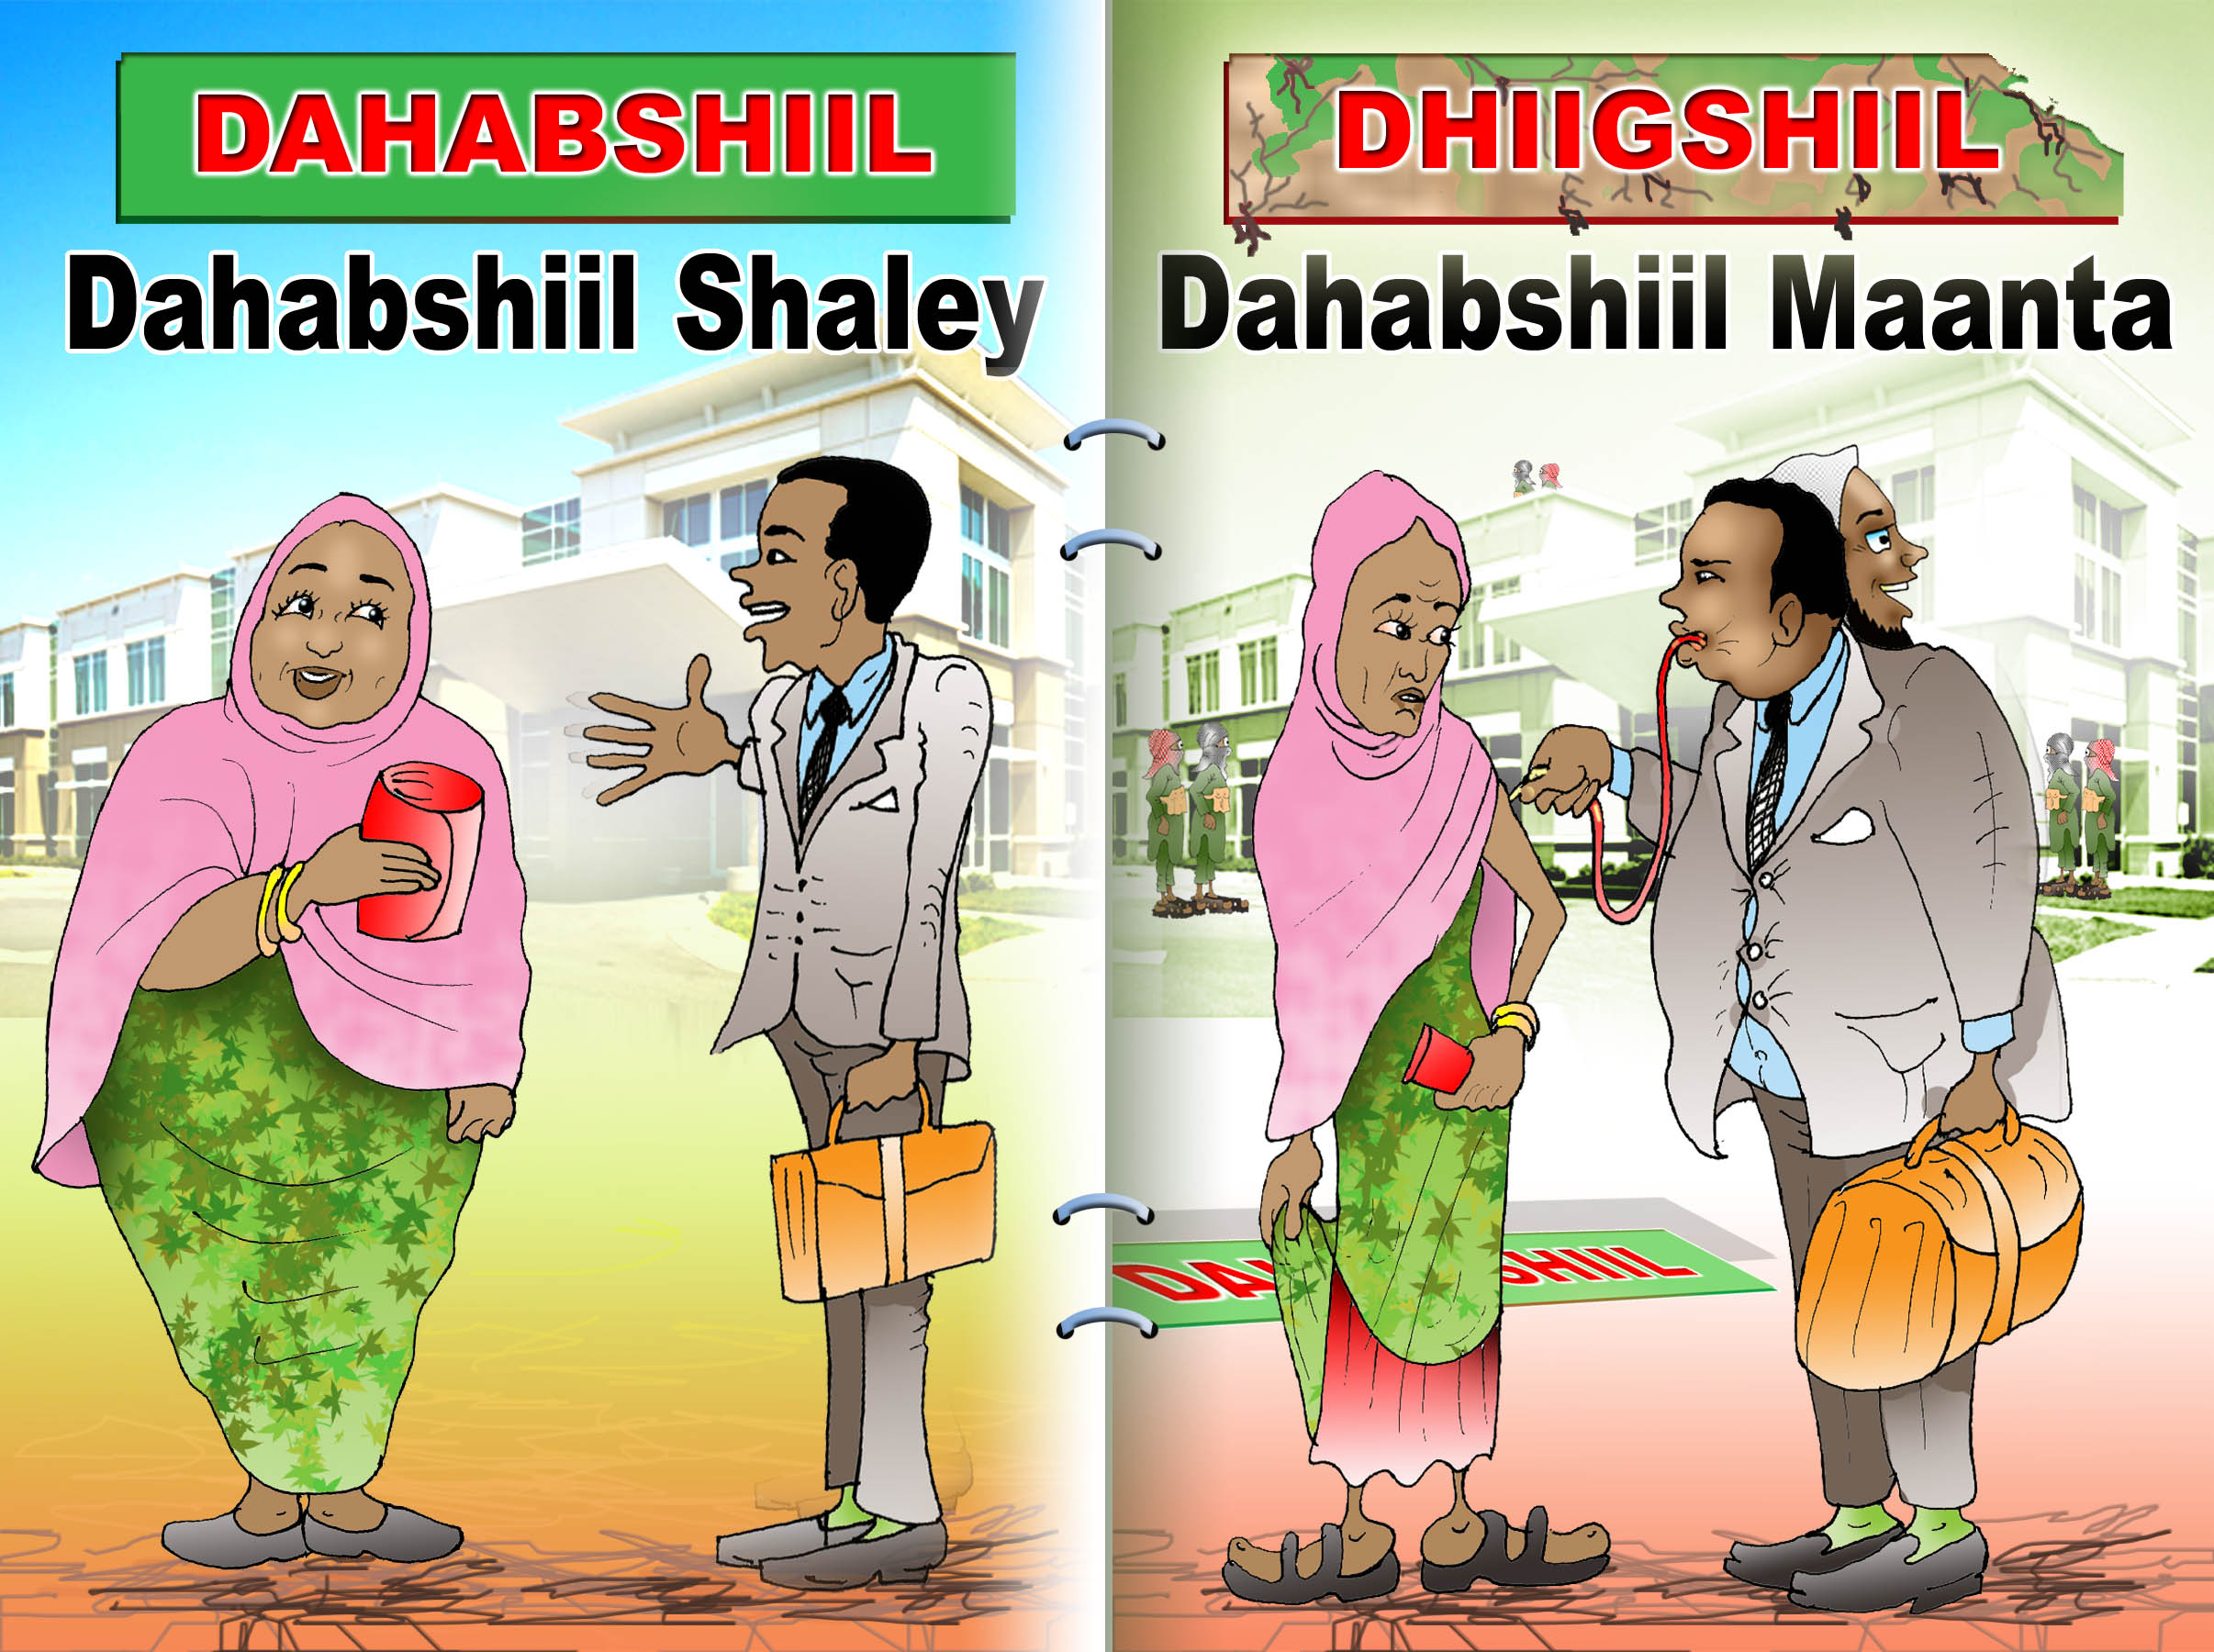 Somalia: Dahabshiil is a Gold smelter." or "blood smelter"